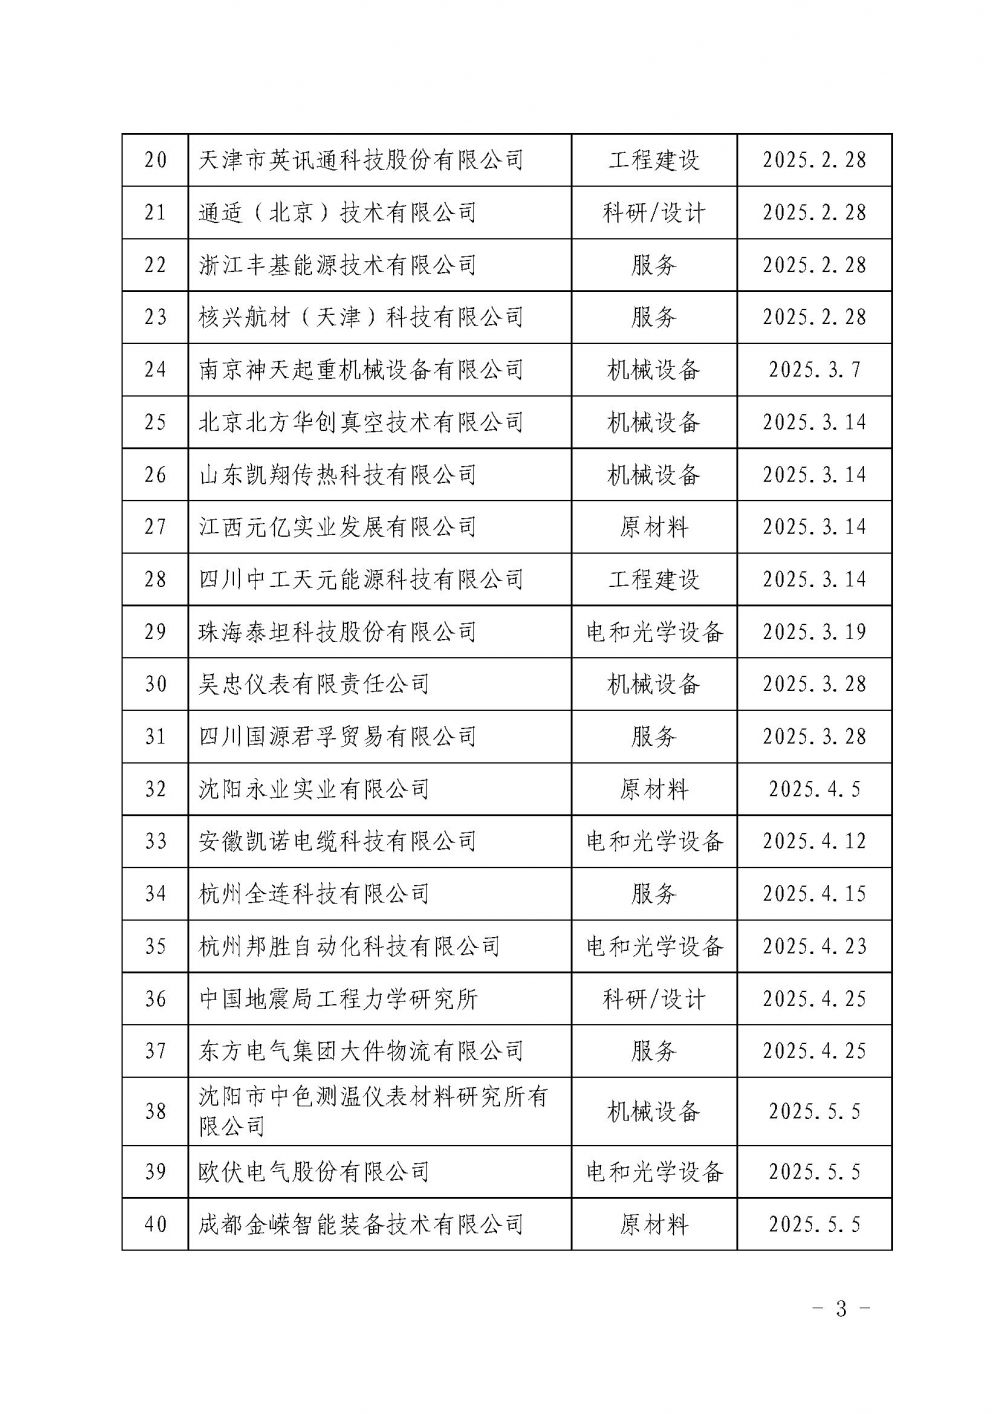 中国核能行业协会关于发布第十九批核能行业合格供应商名录的公告_页面_3.jpg